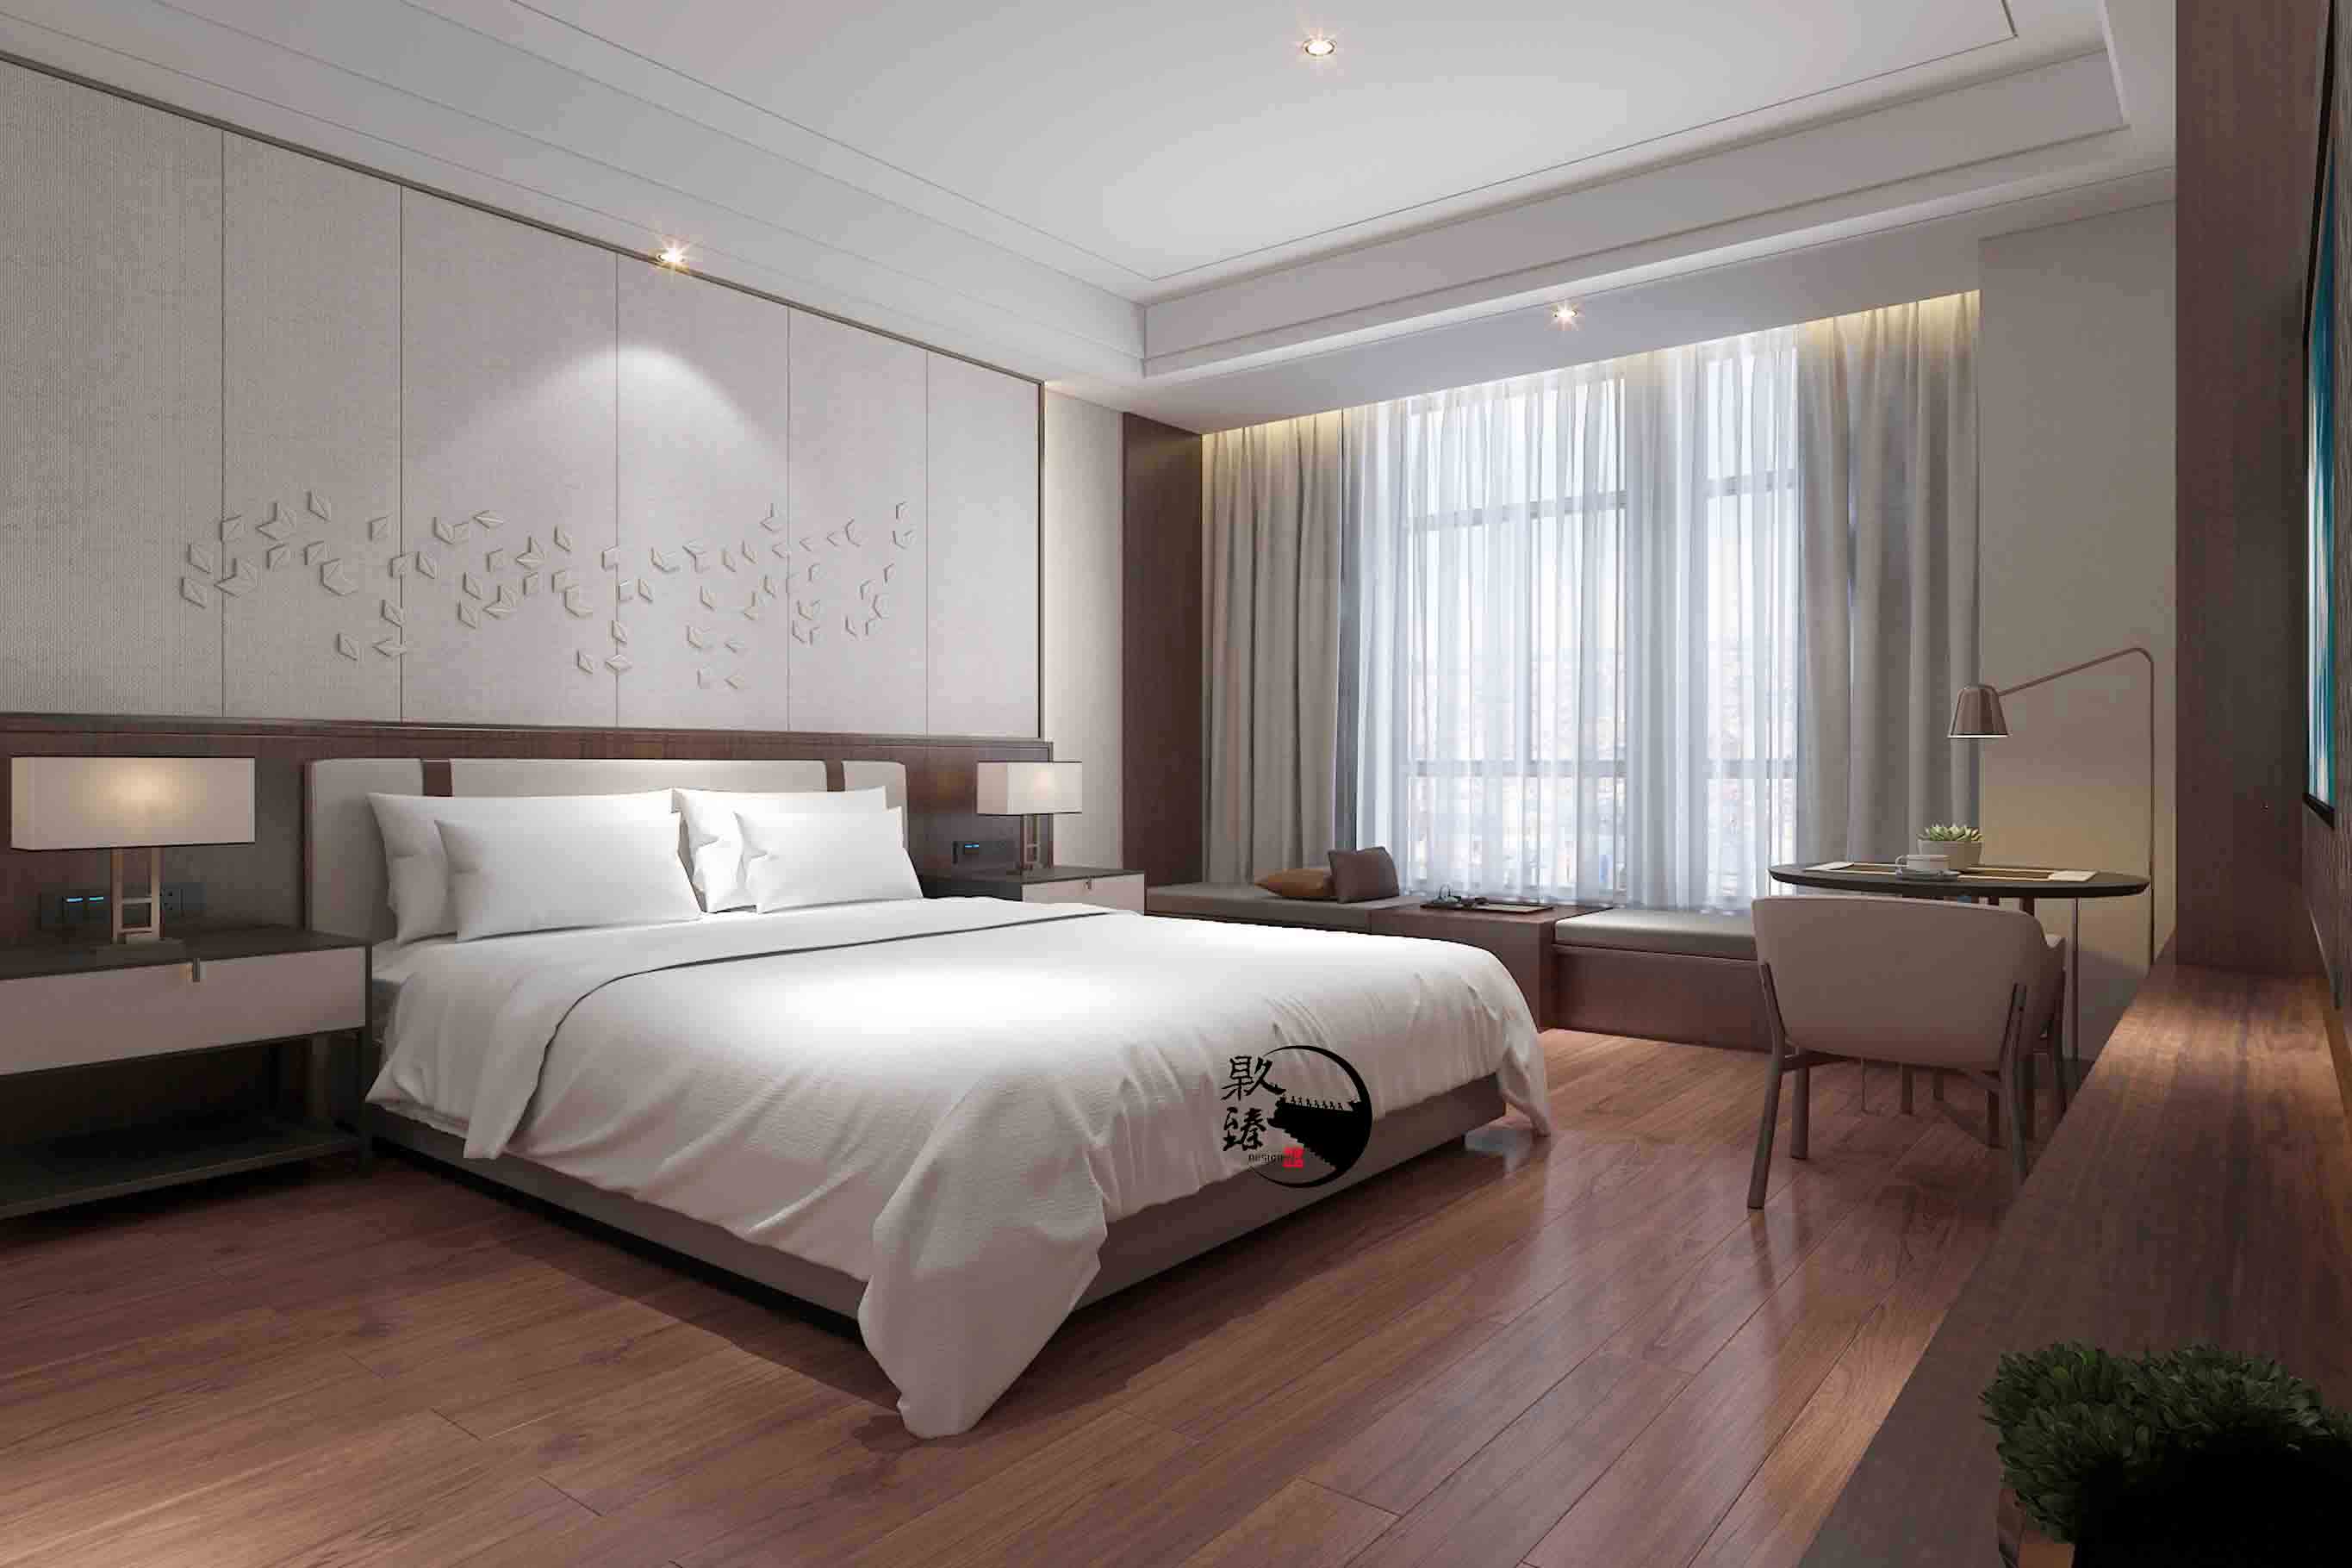 平罗米素酒店设计|满足客户对舒适和安静的需求